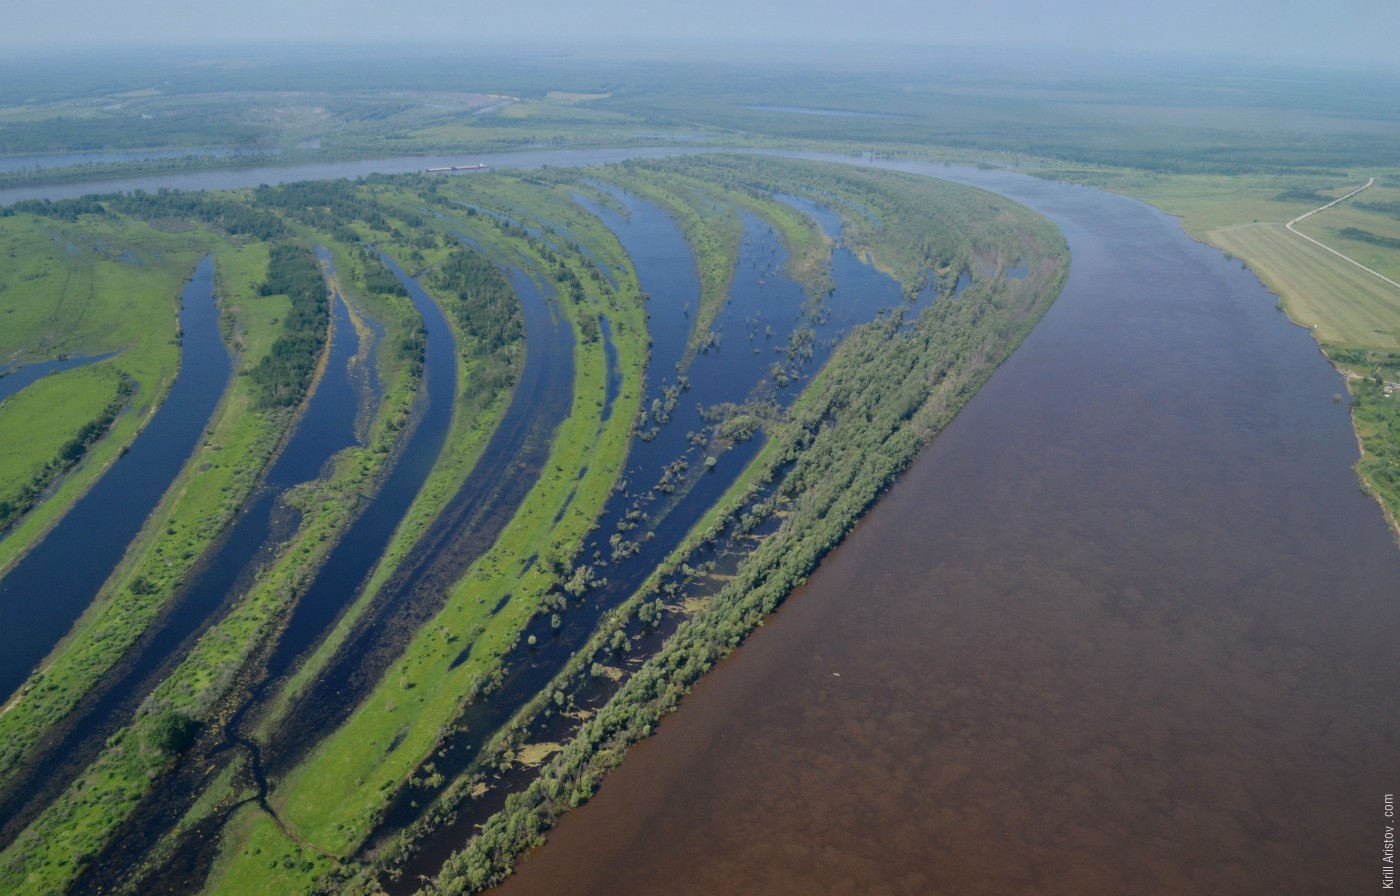 Река Иртыш, Location: Река Иртыш. Уватский район, Тюменская область, Россия.